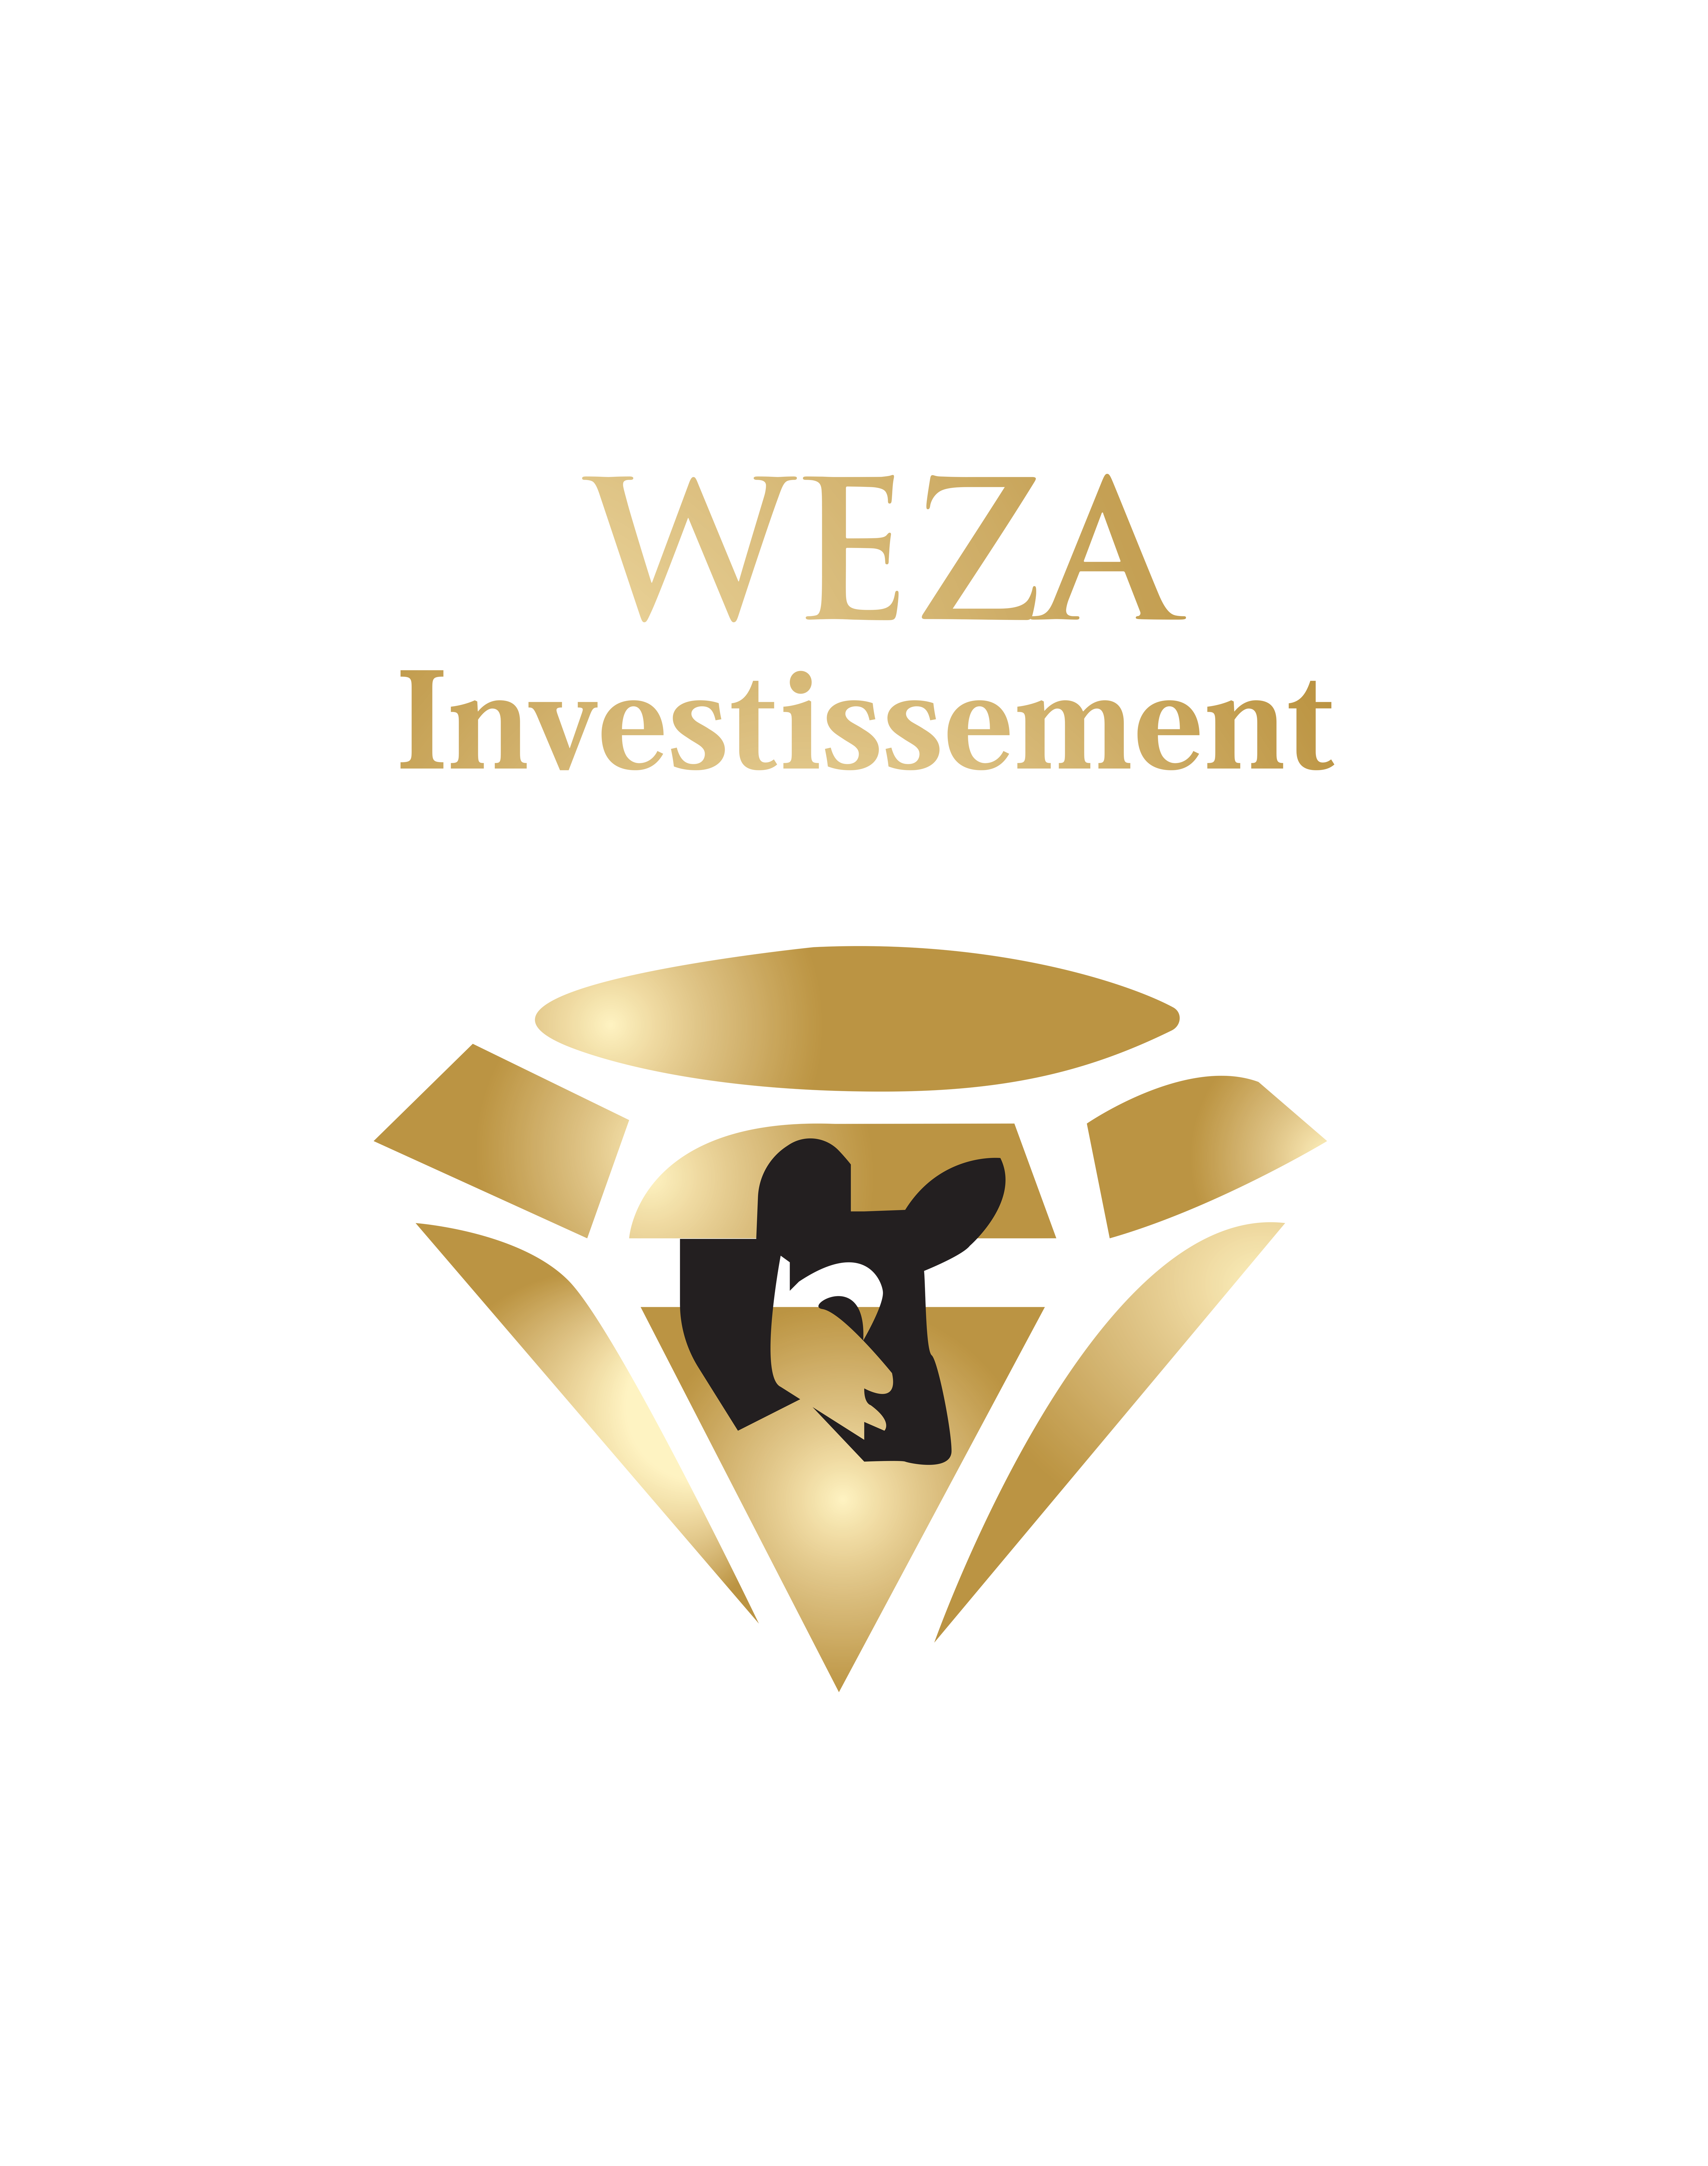 Weza Investments